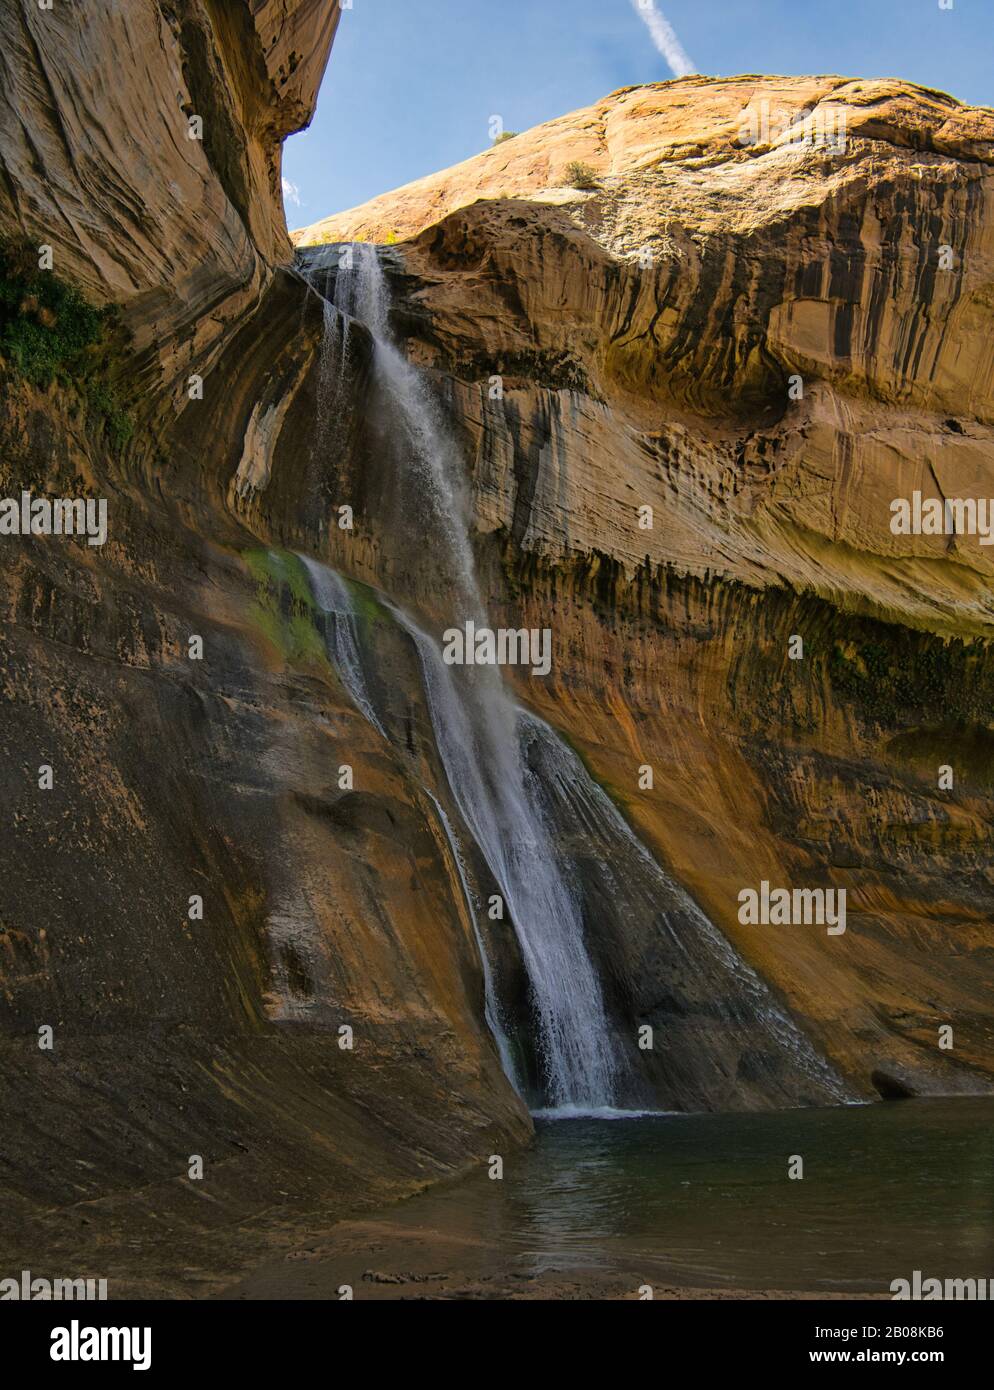 Un pequeño cañón con una cascada alta y una piscina profunda para bañarse Foto de stock